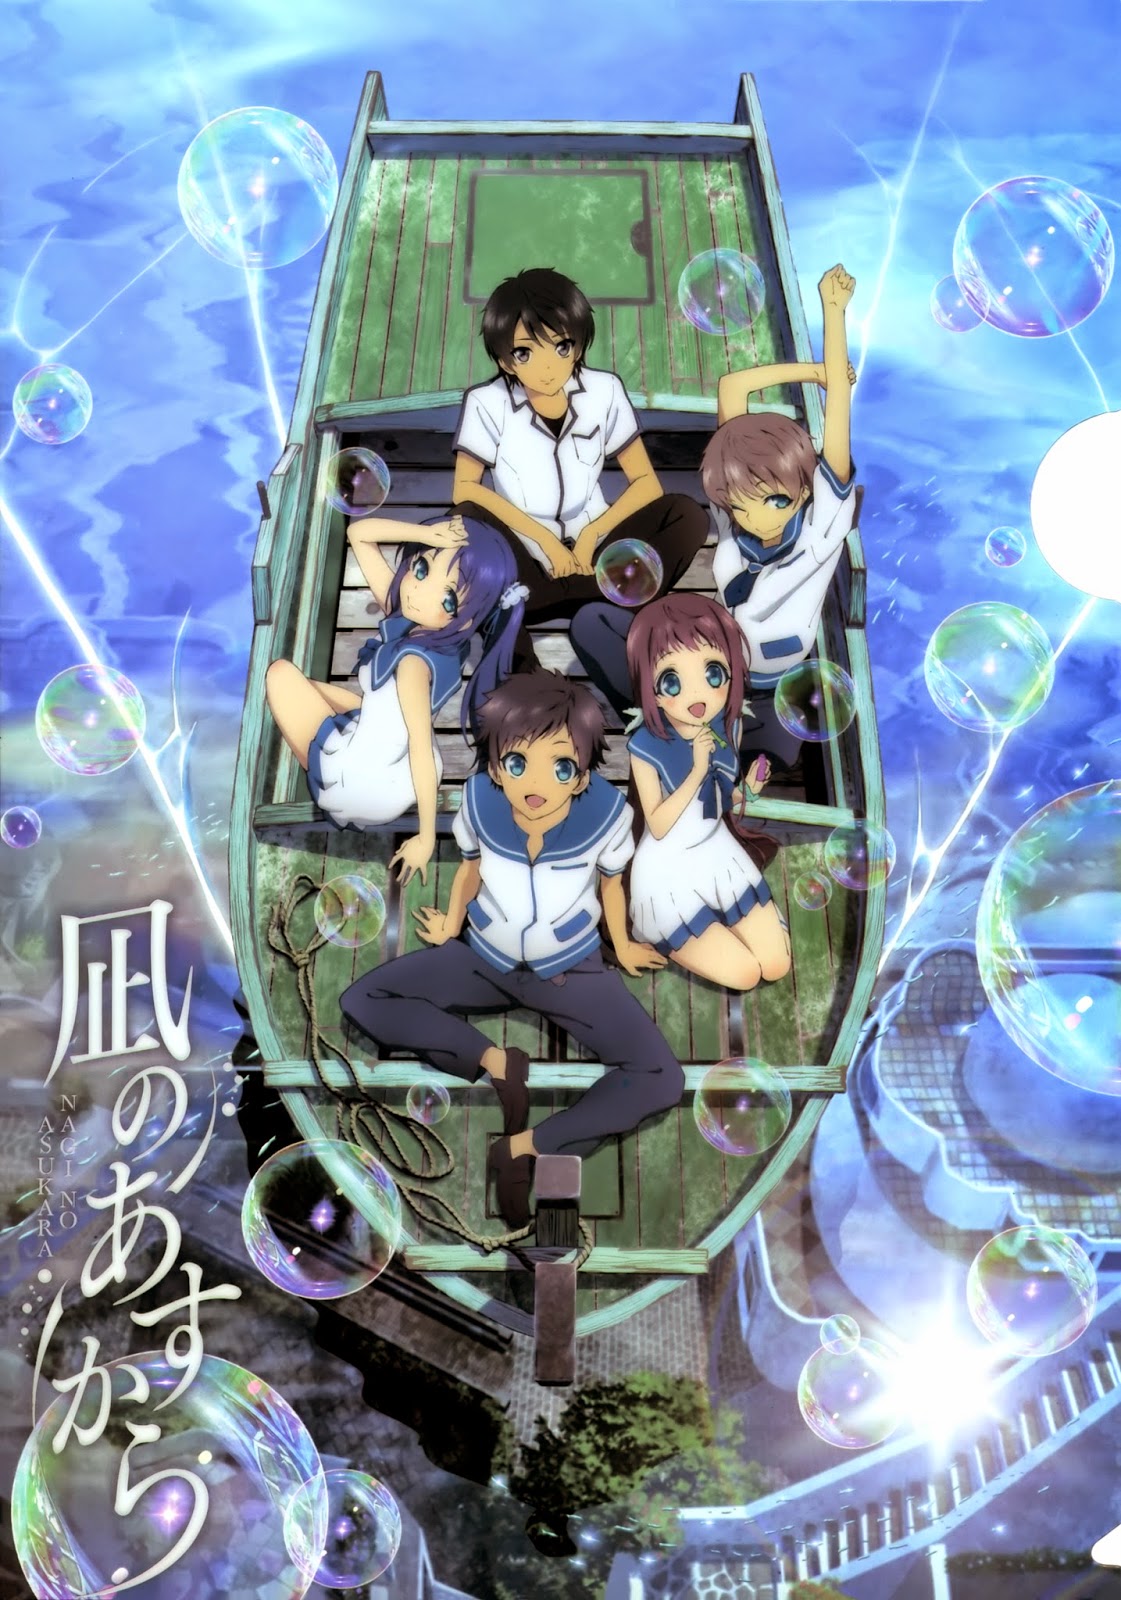 [Review] Nagi no Asukara - Anime Cinta Bercabang-cabang